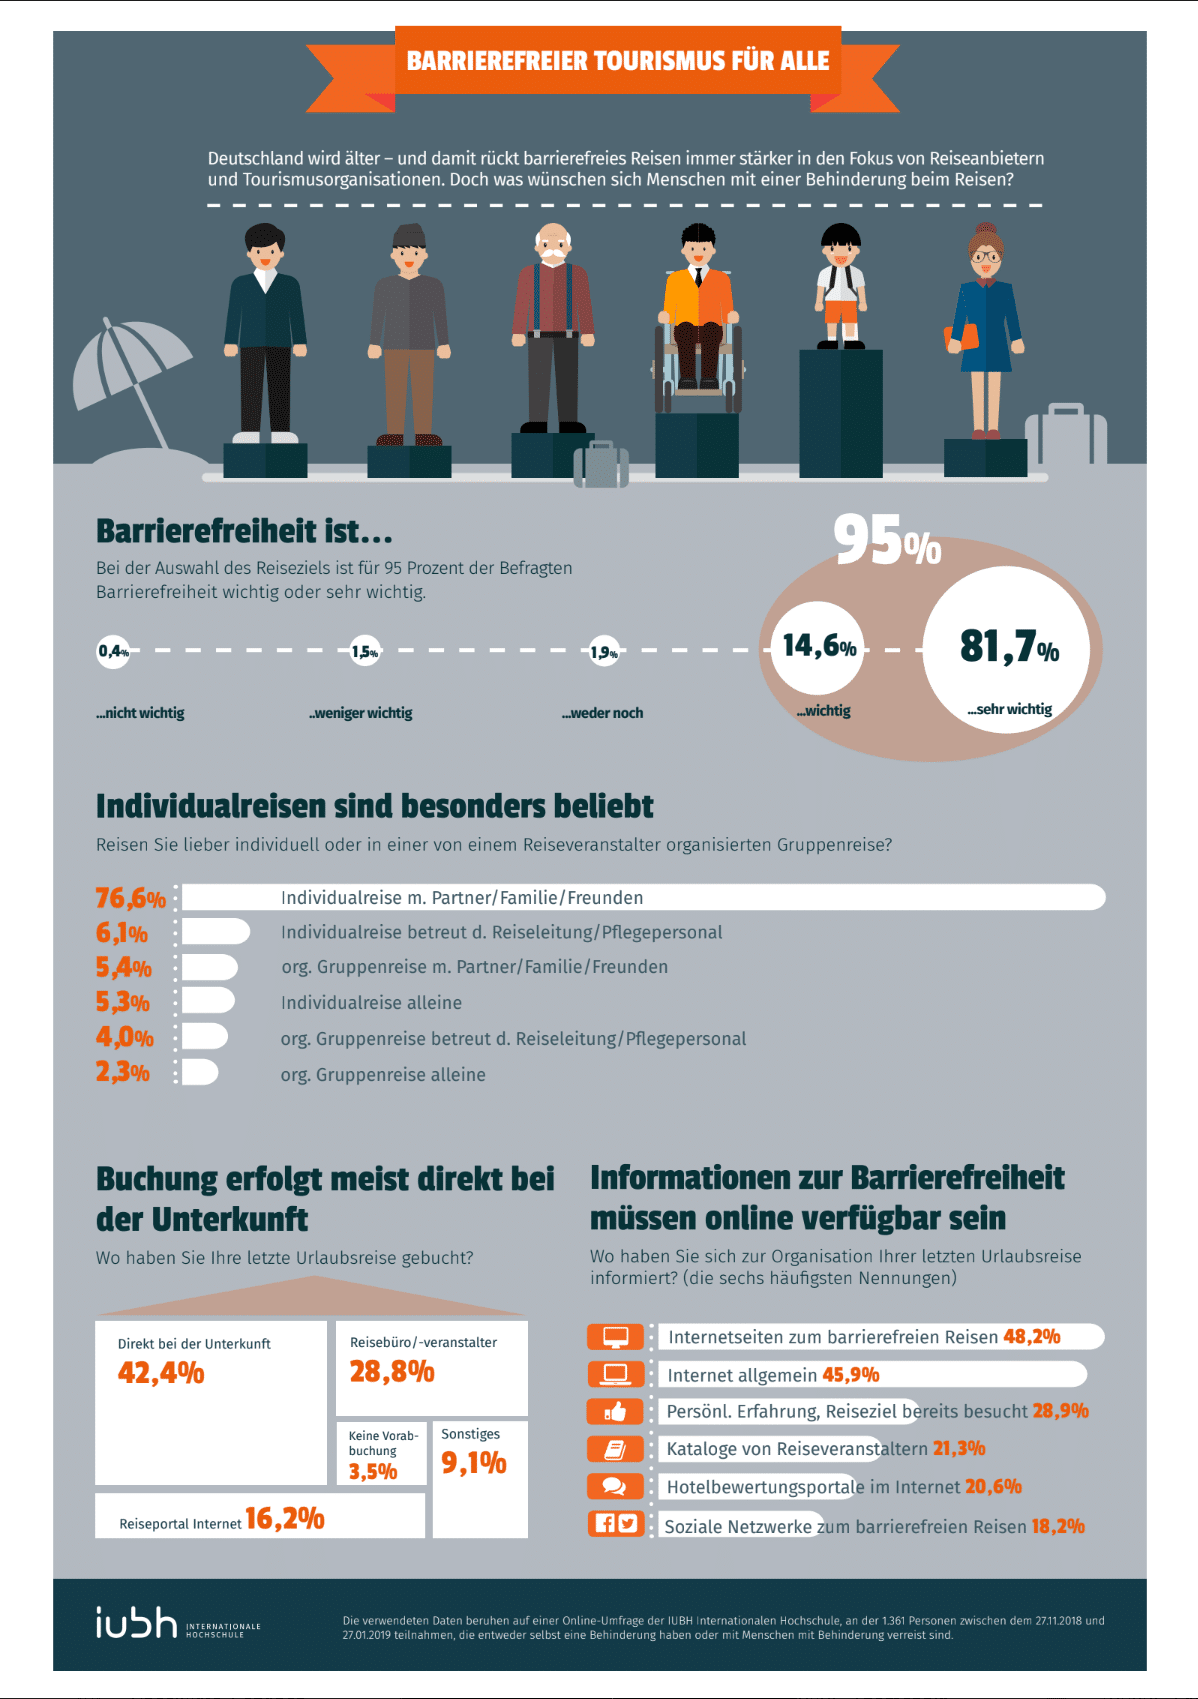 Infografik: Barrierefreier Tourismus in Zahlen, Ergebnisse Online Umfrage, Quelle: IUBH Internationalen Hochschule